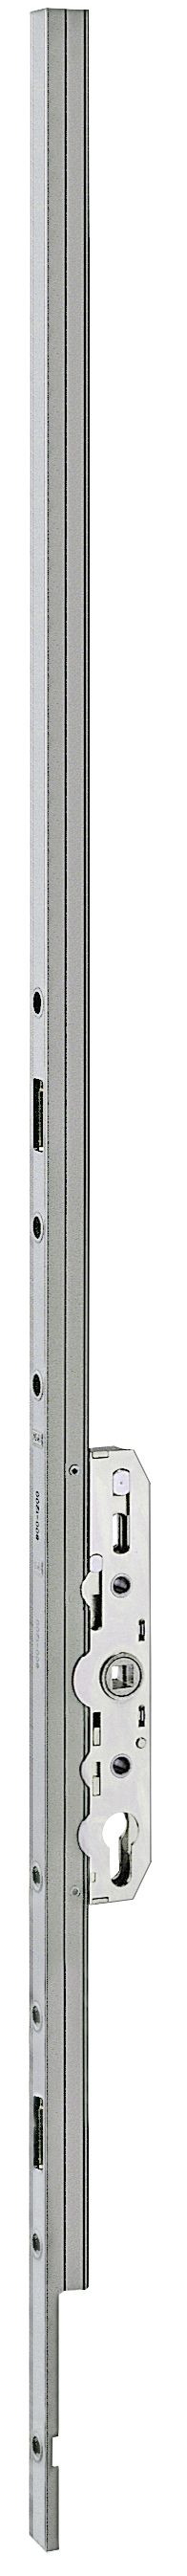 AGB -  Cremonese ALZANTE IMAGO per alzante scorrevole altezza maniglia fissa con chiusura a perni - gr / dim. 03 - entrata 27,5 - alt. man. 1000 - lbb/hbb 1770-2150